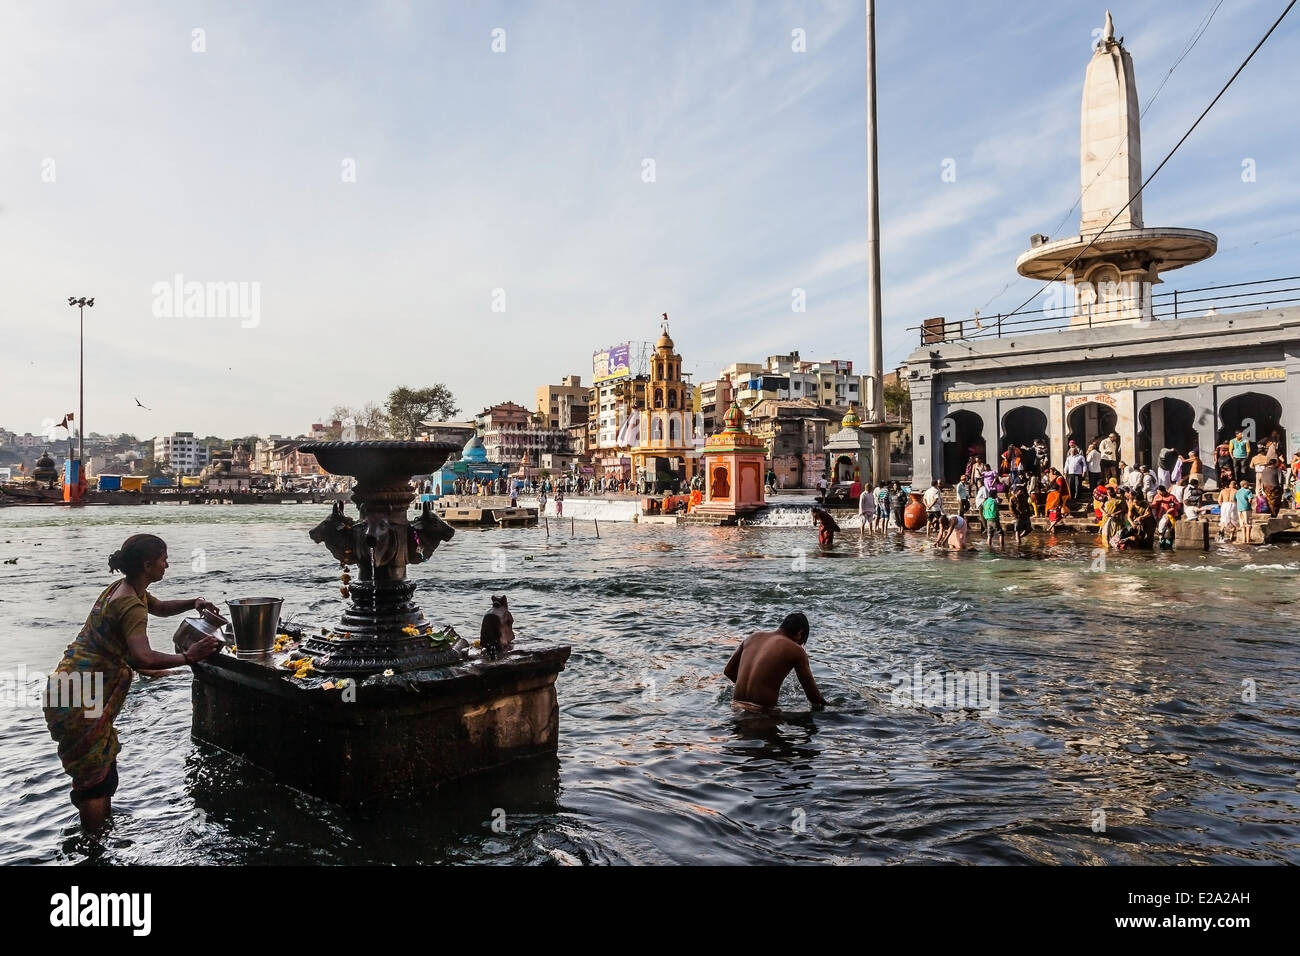 India, Maharashtra state, Nashik, fountain in the Godavari river Stock Photo